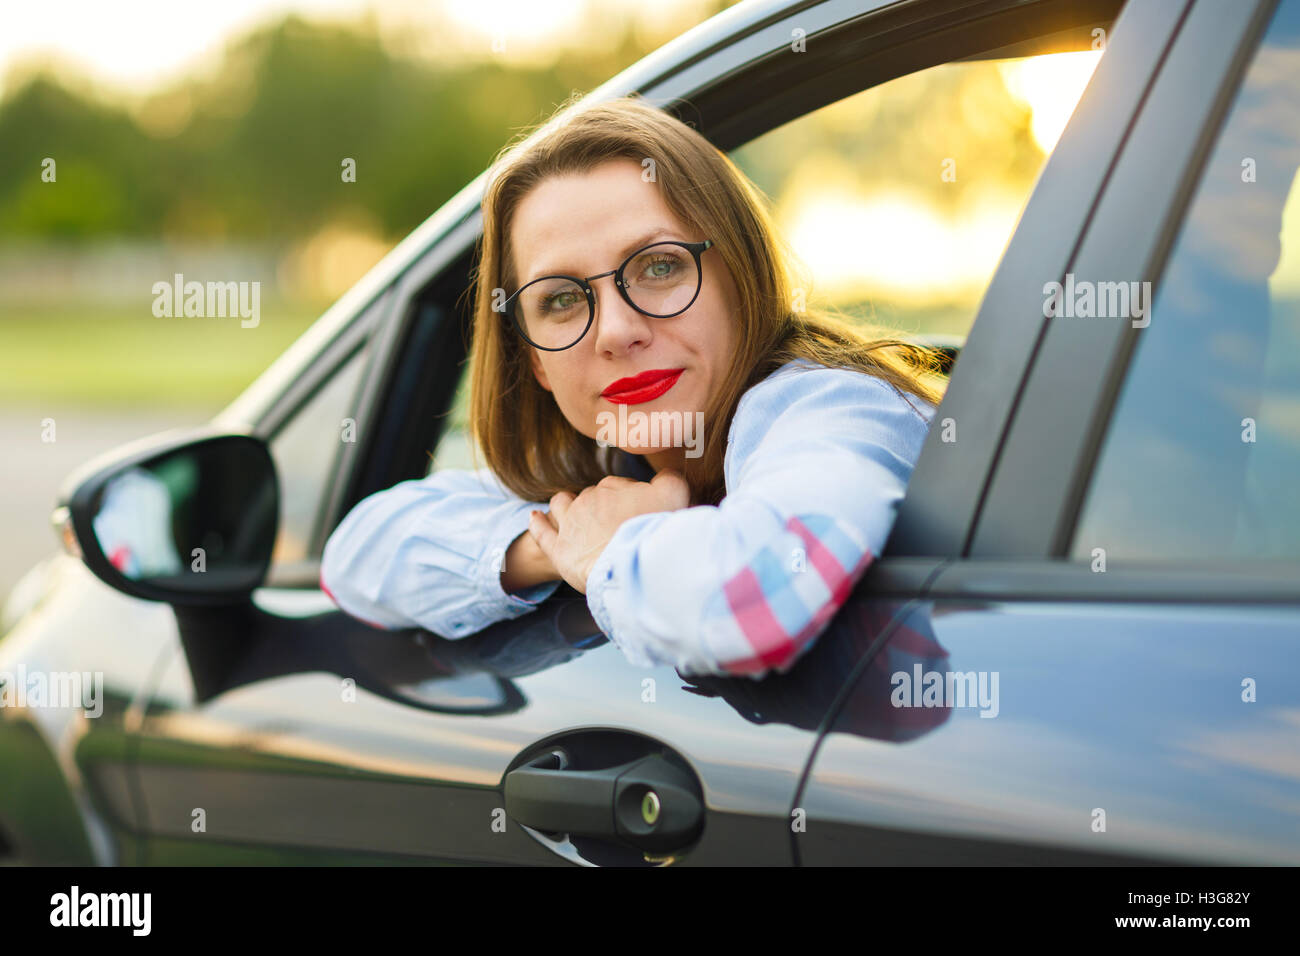 Glückliche Mädchen sitzen in einem Auto - Konzept für den Kauf eines Gebrauchtwagens oder einen Mietwagen Stockfoto